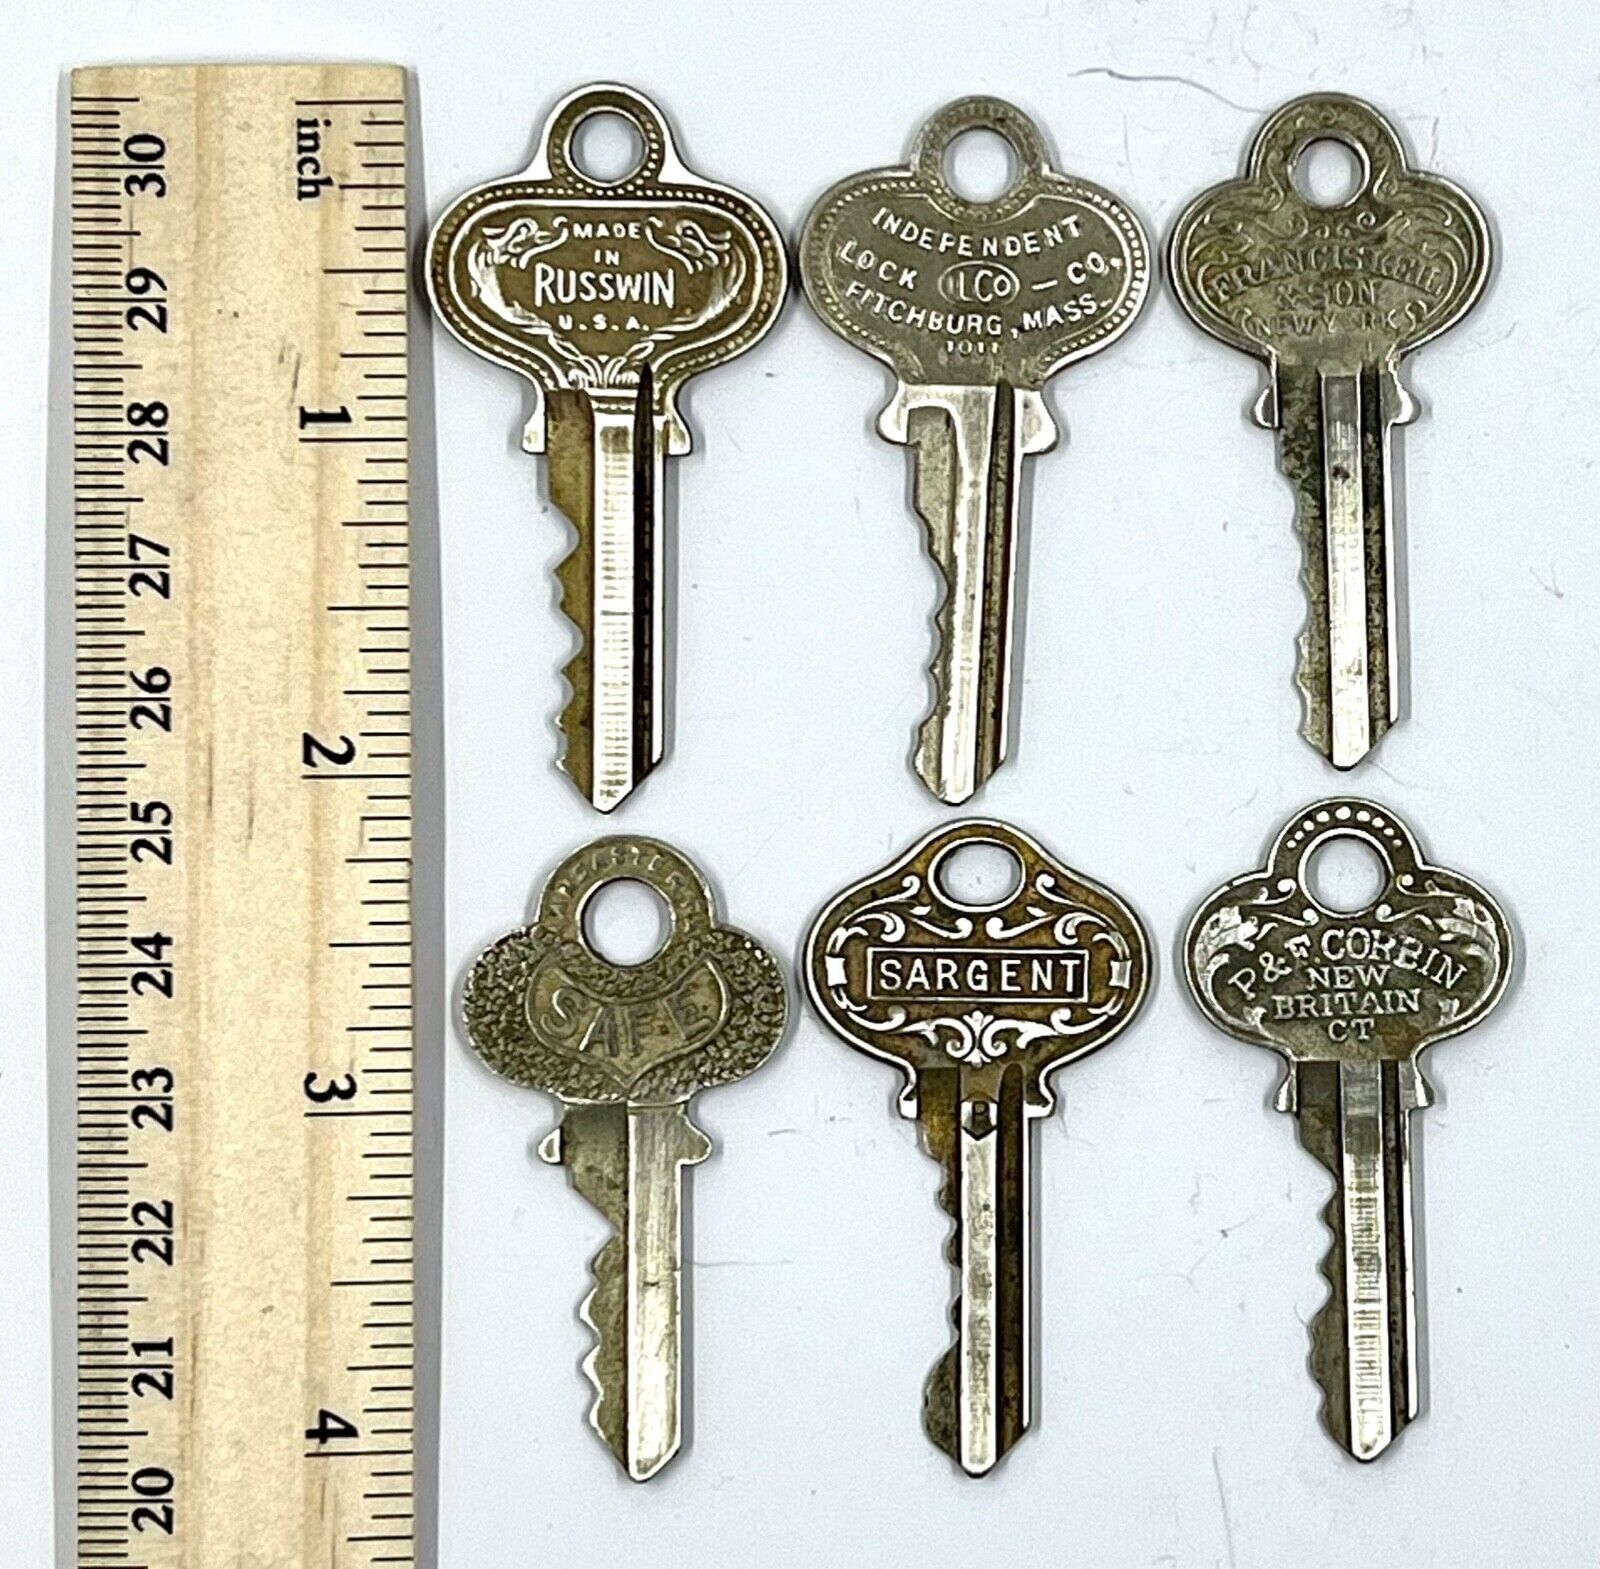 6 Vintage P&F Corbin, Russian, ILCO, SAFE, Kiel, Sargent Ornate Keys 